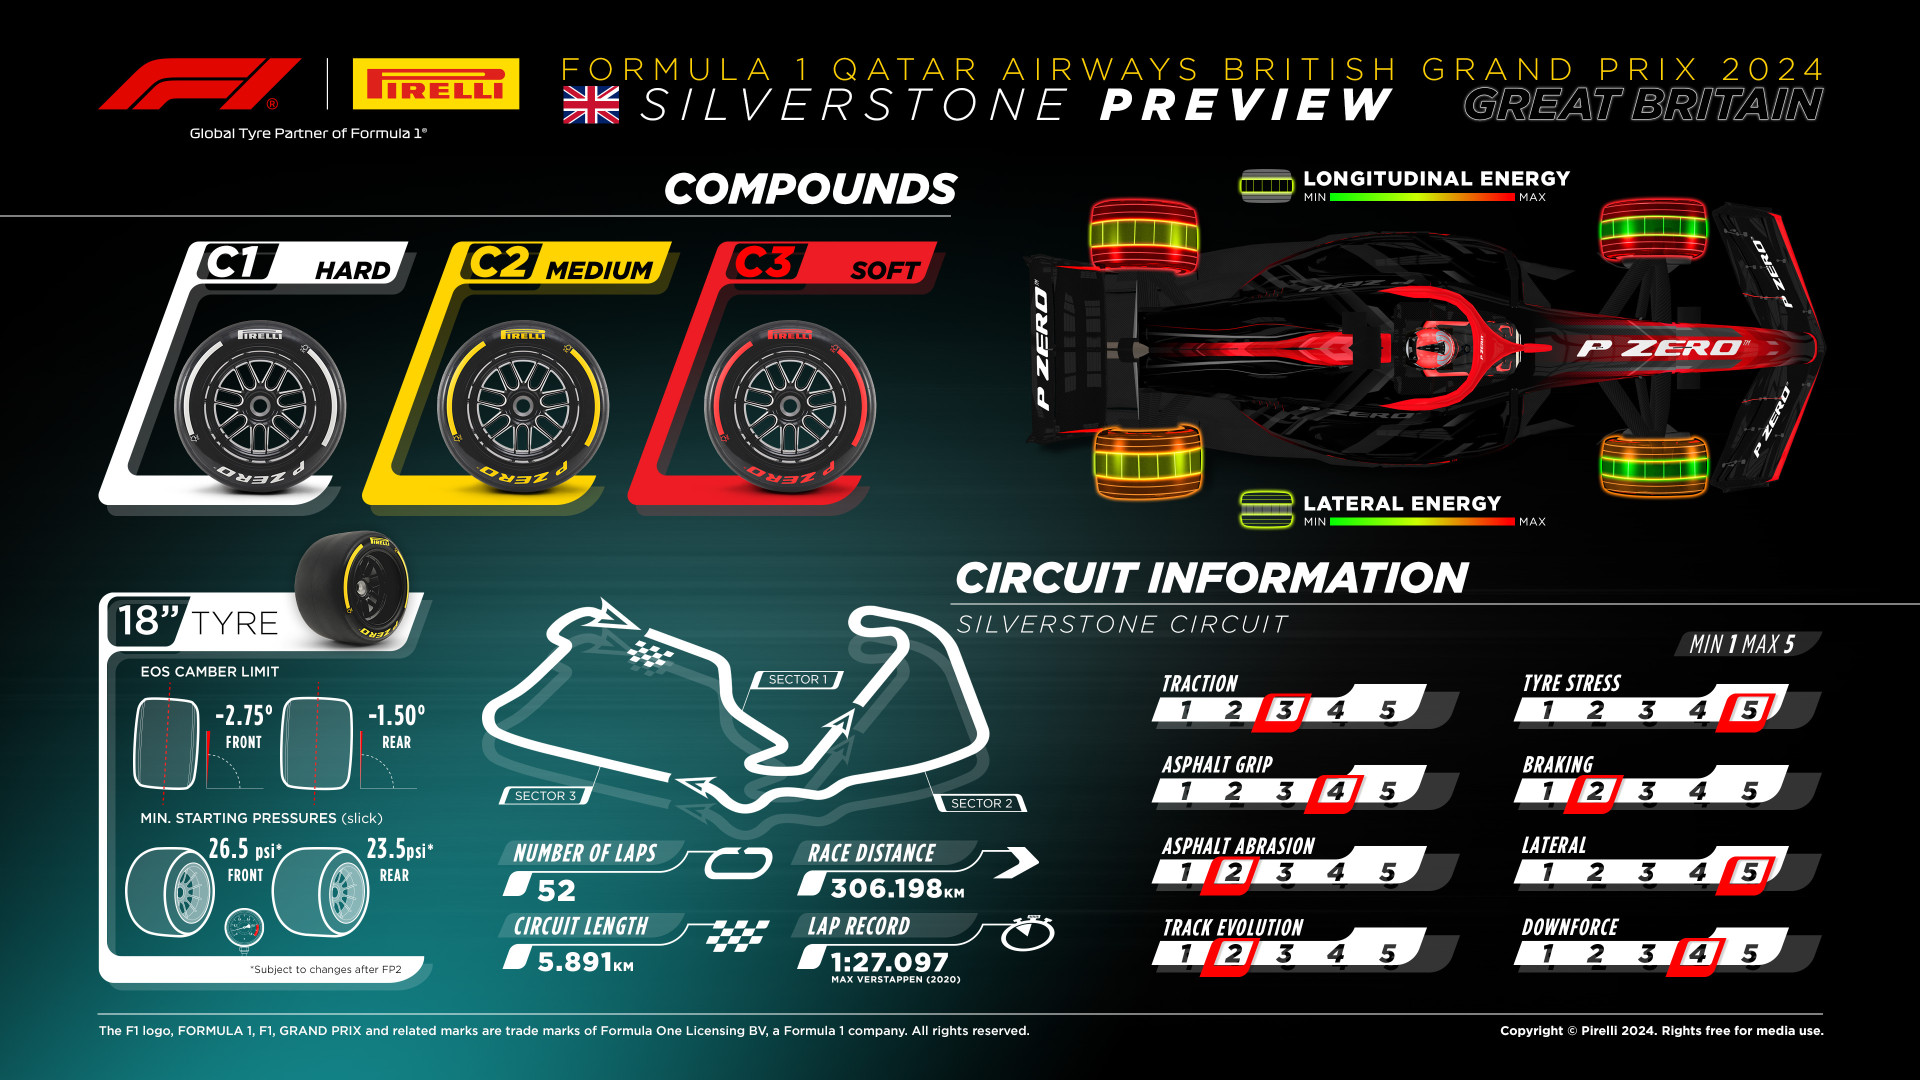 Pirelli F1 – GP da Inglaterra: compostos mais duros para o berço da Fórmula 1